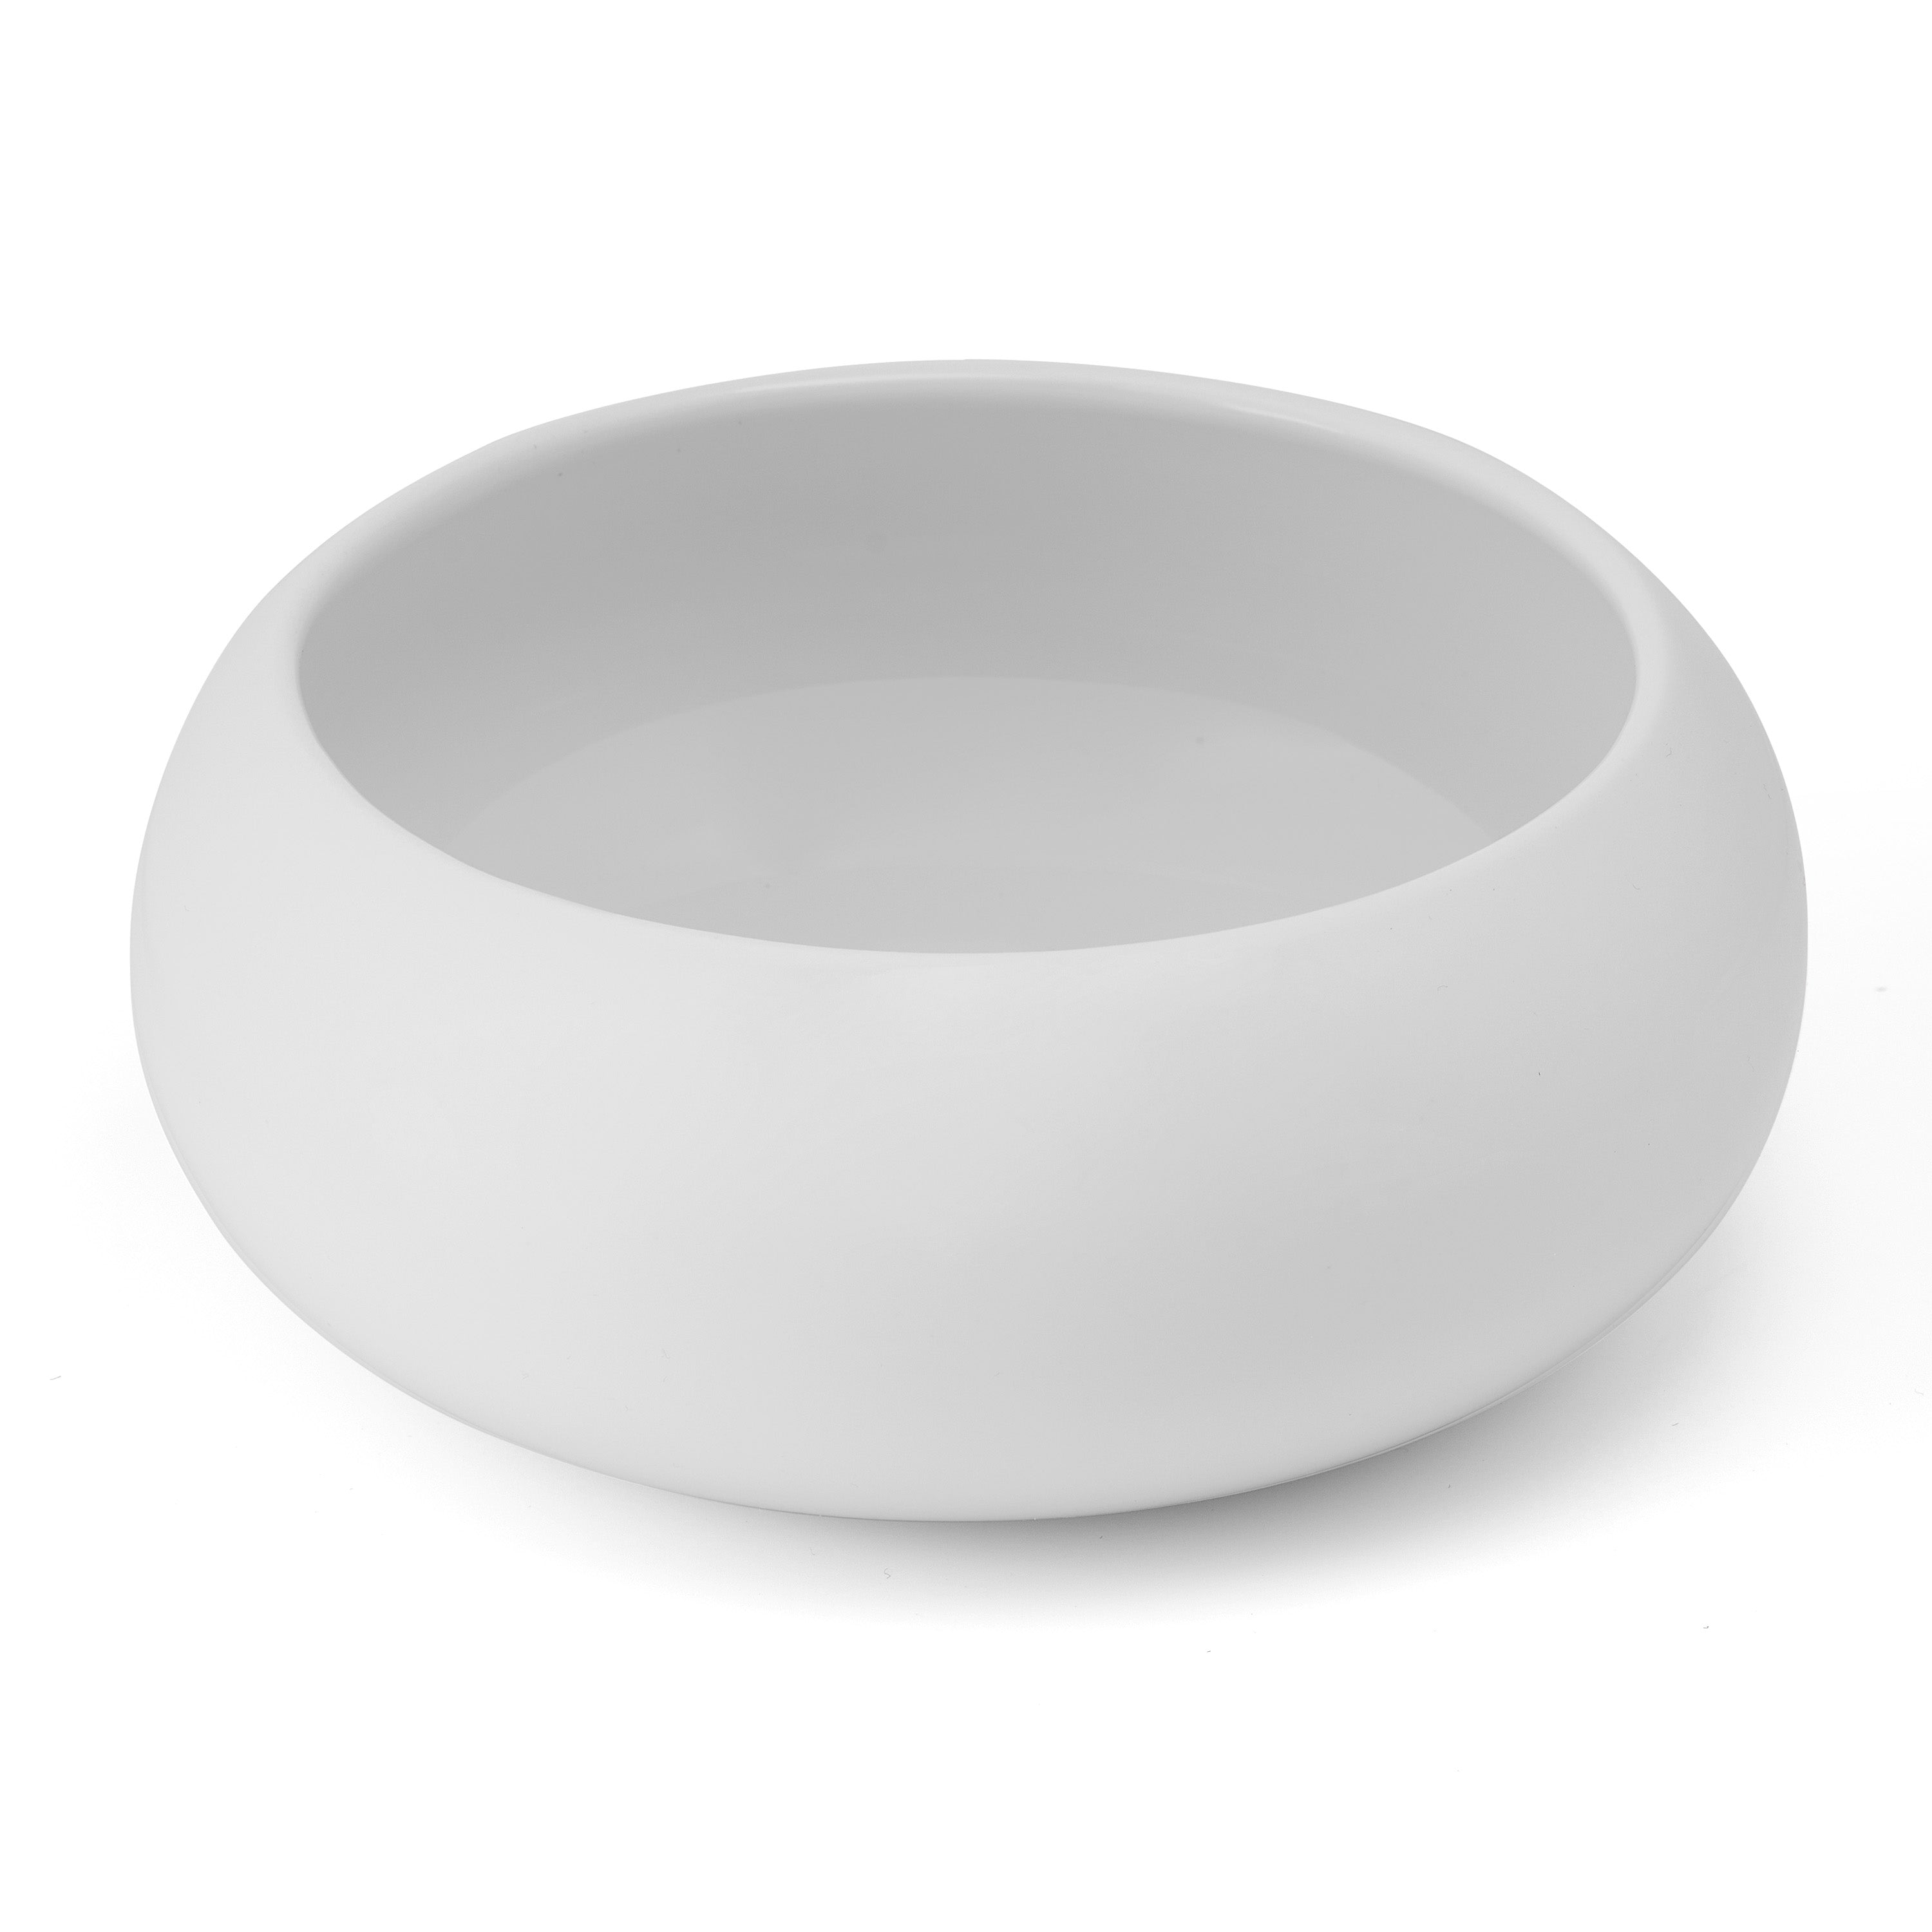 Specials Porcelain Bowl 5" / 12oz White